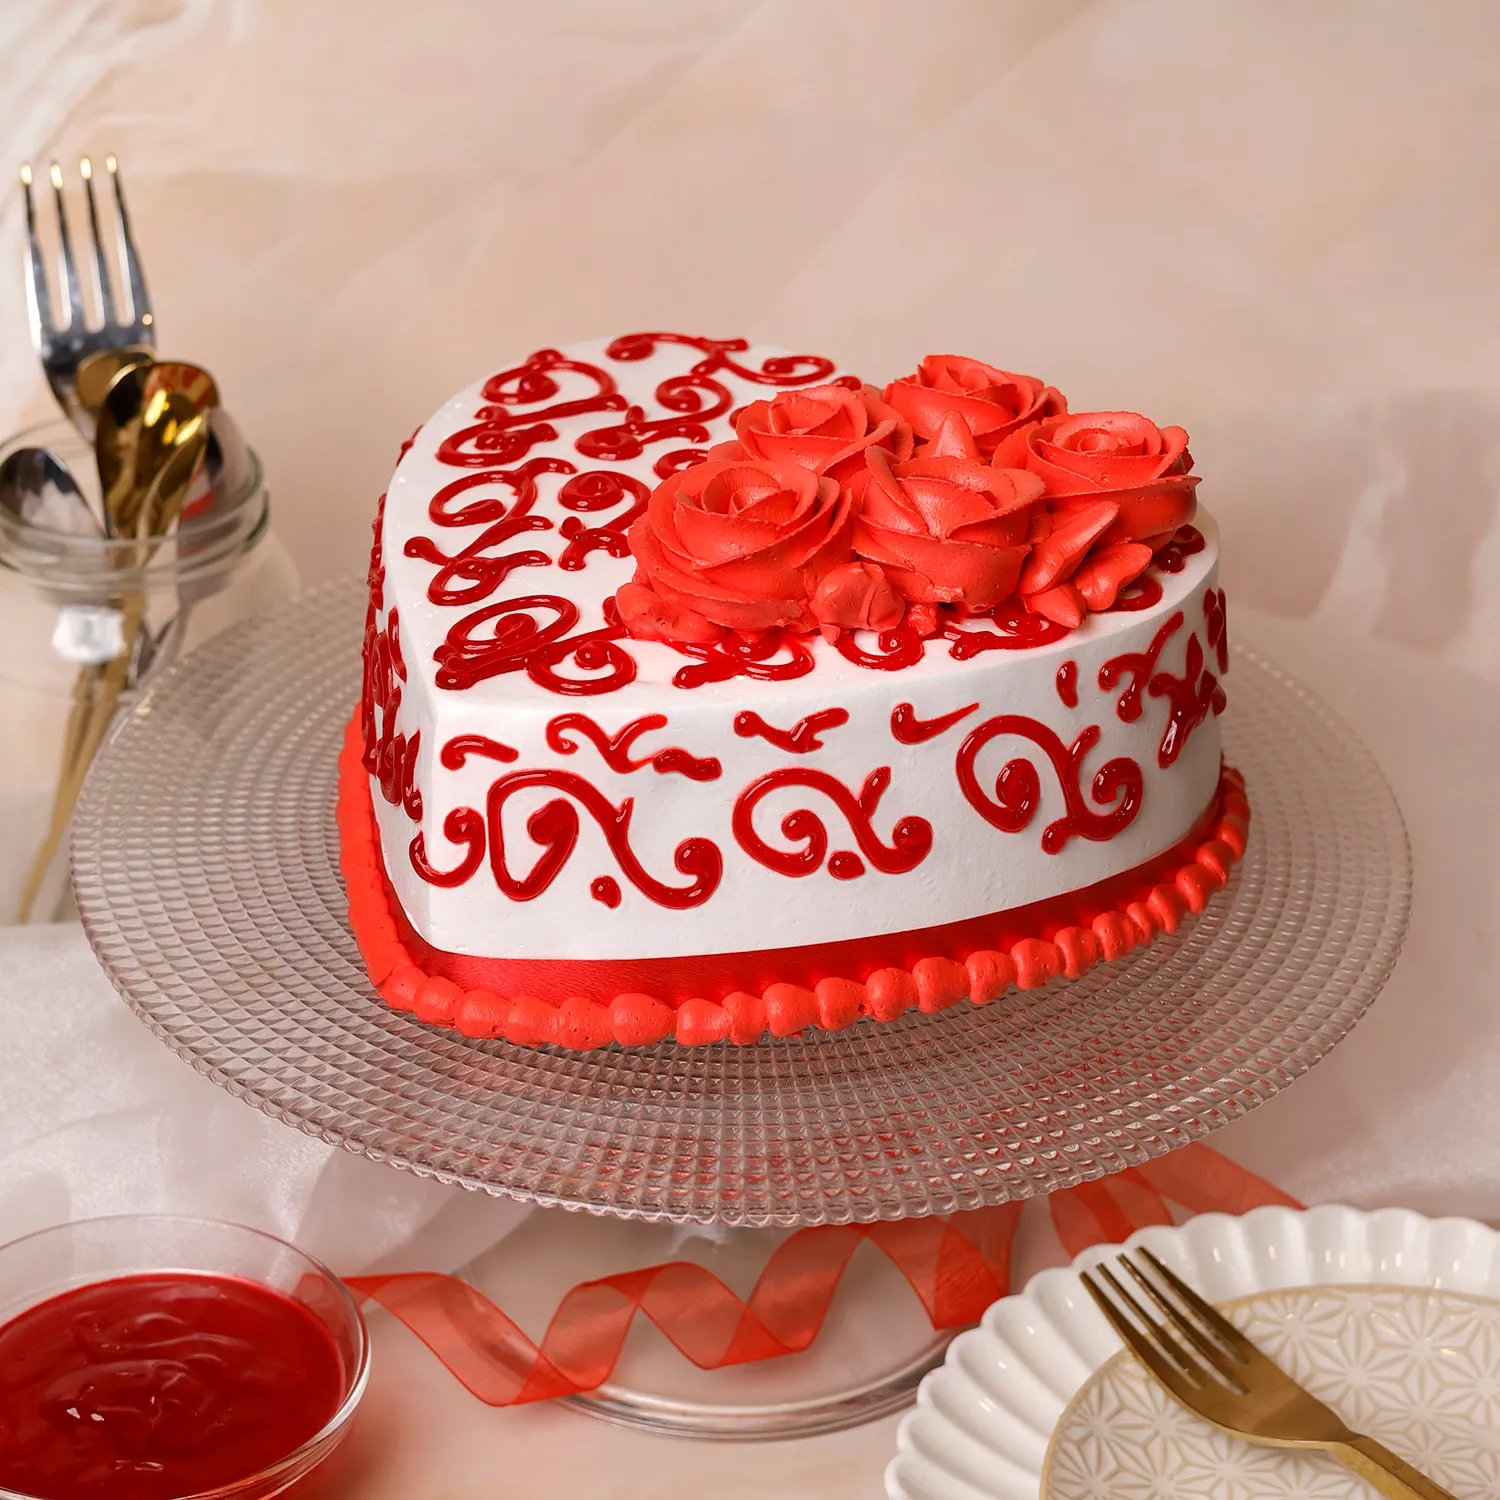 Happy Wedding Anniversary Cake - 500 Gram